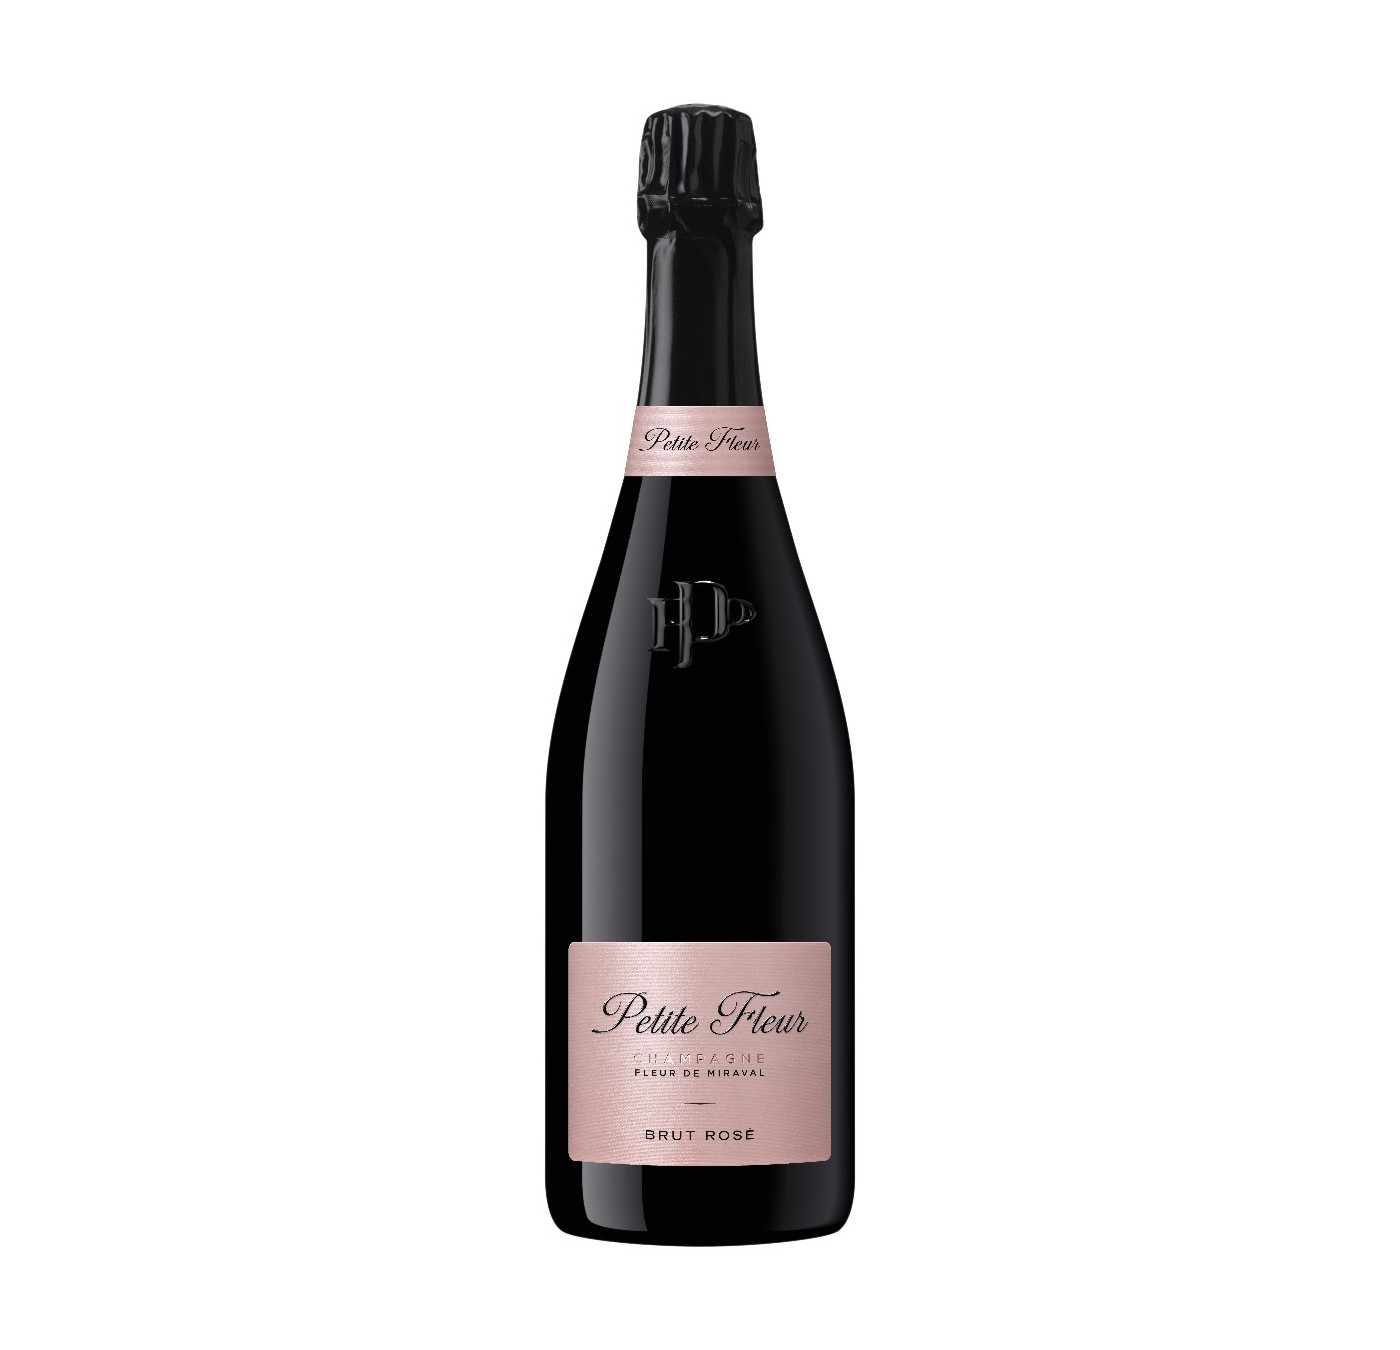 Brad Pitt Launches “Petite Fleur”, His New Champagne Cuvée - Wine